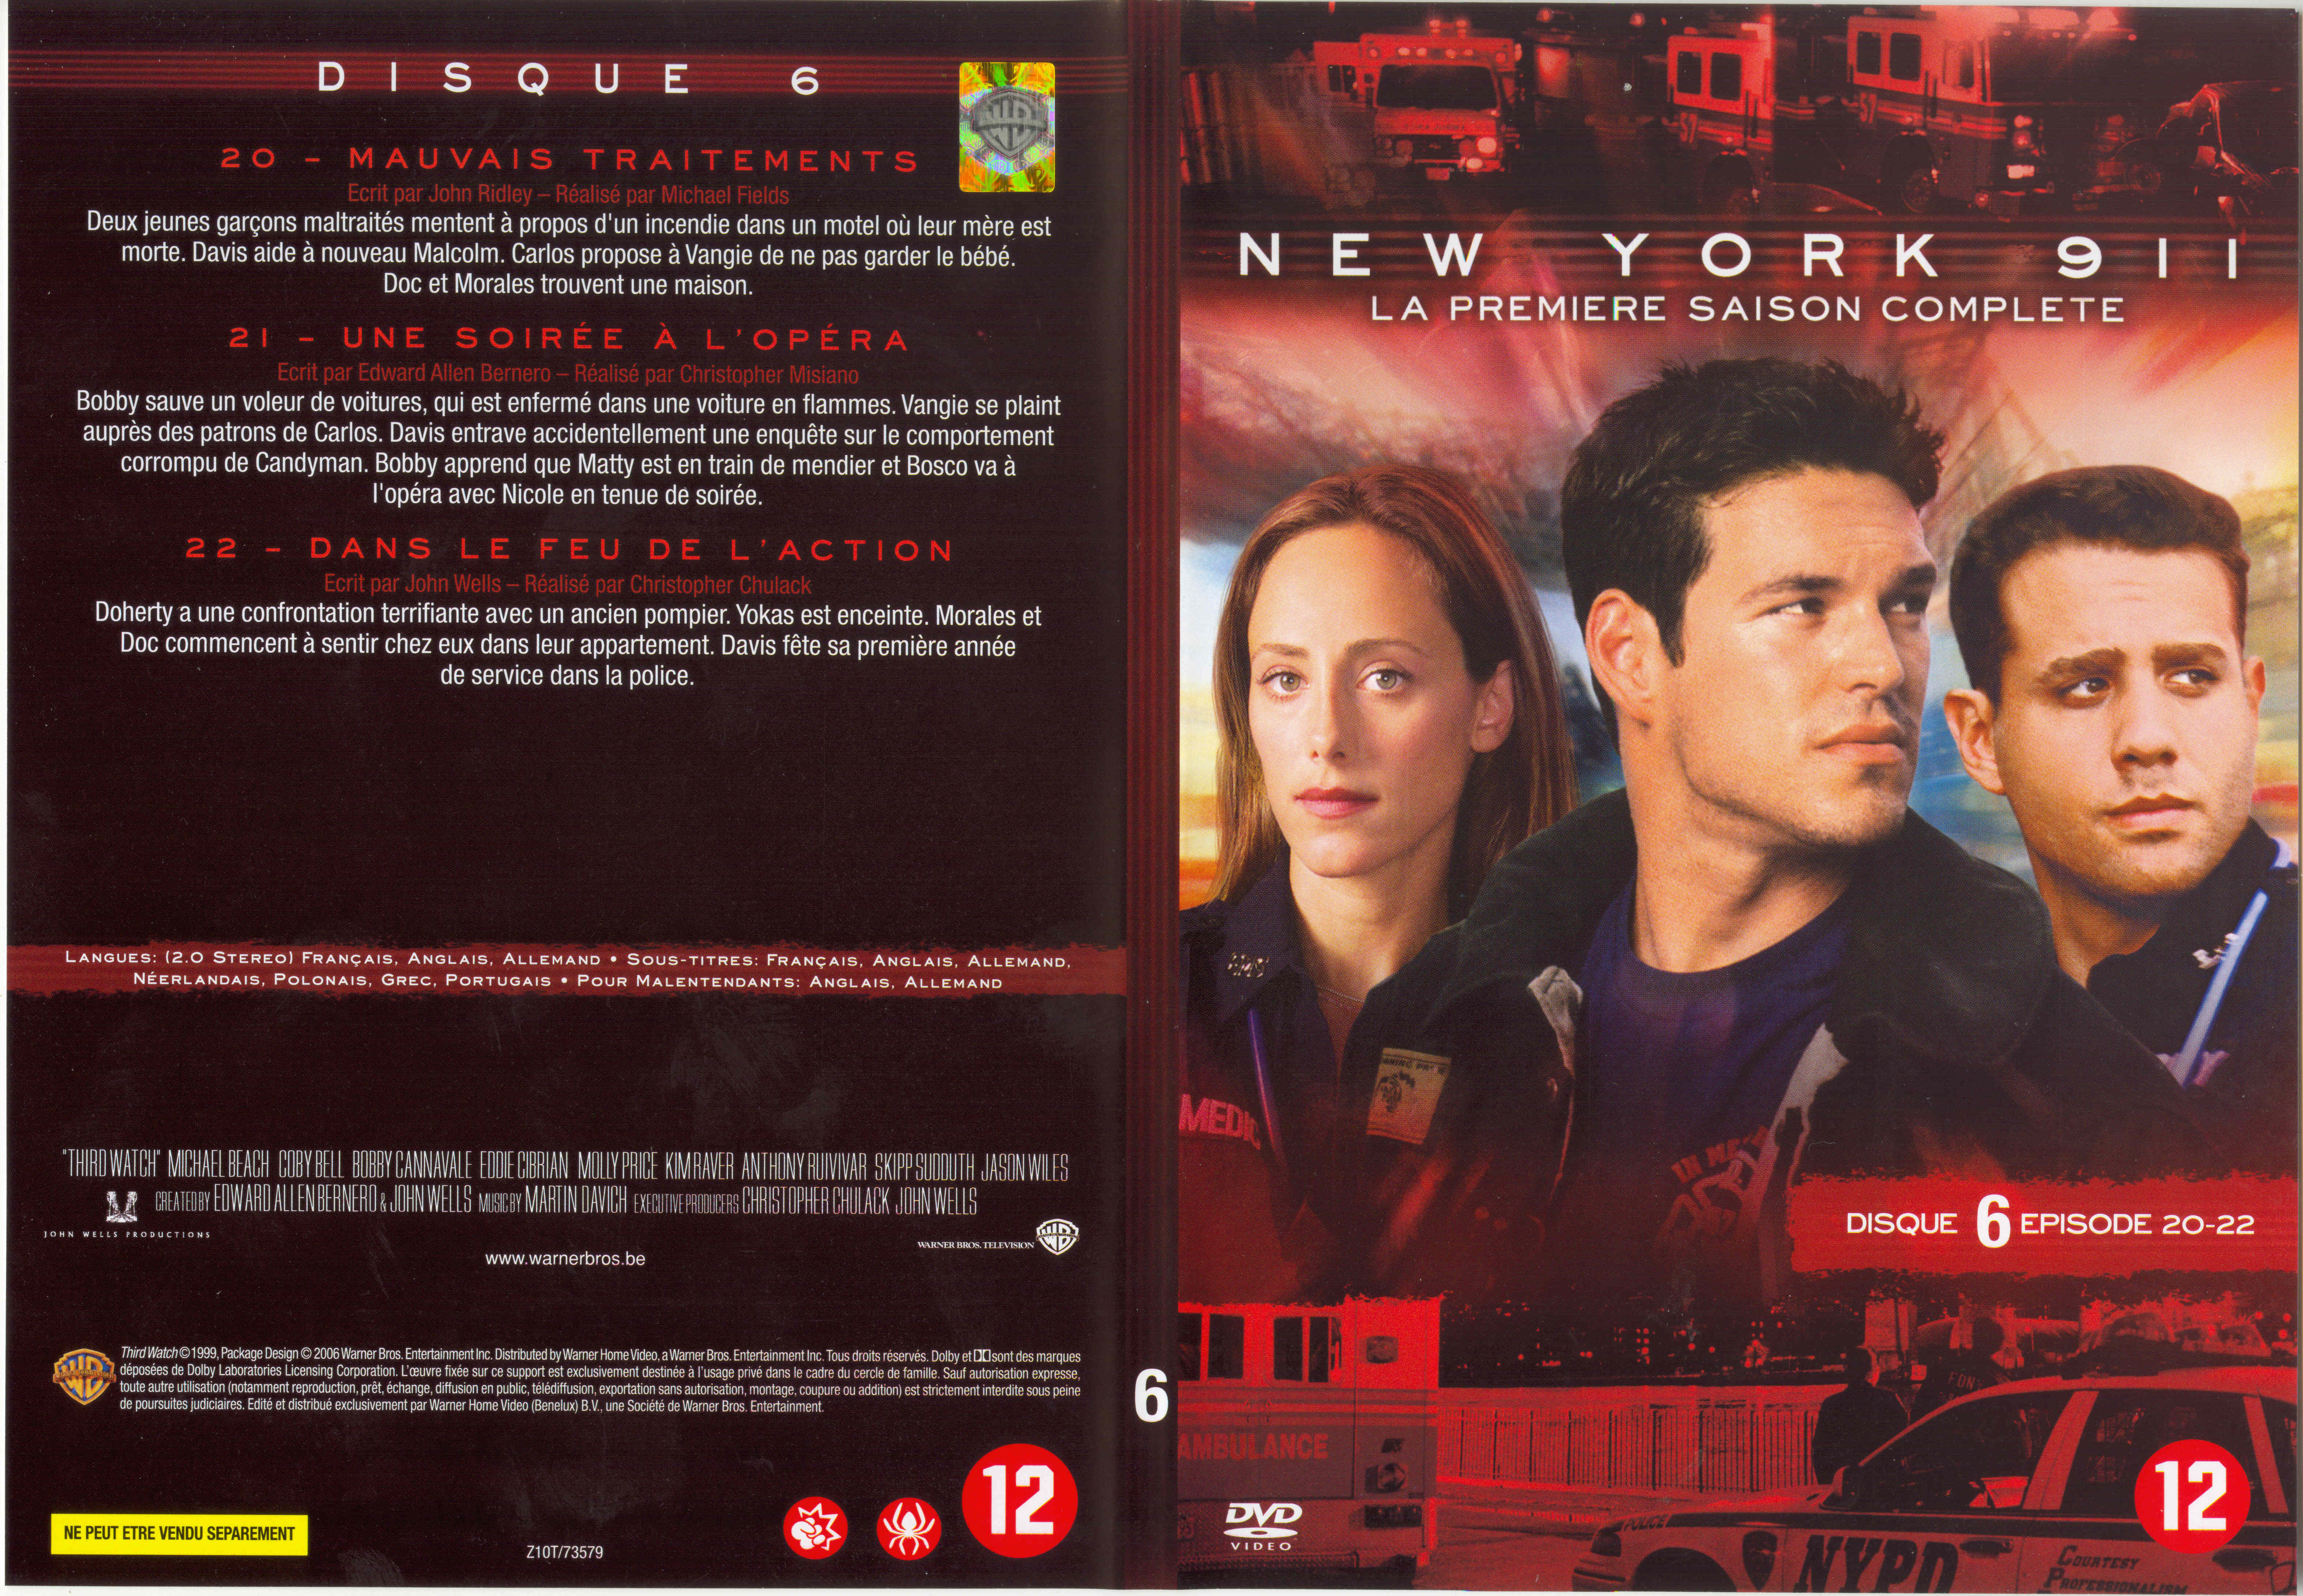 Jaquette DVD New York 911 Saison 1 DVD 6